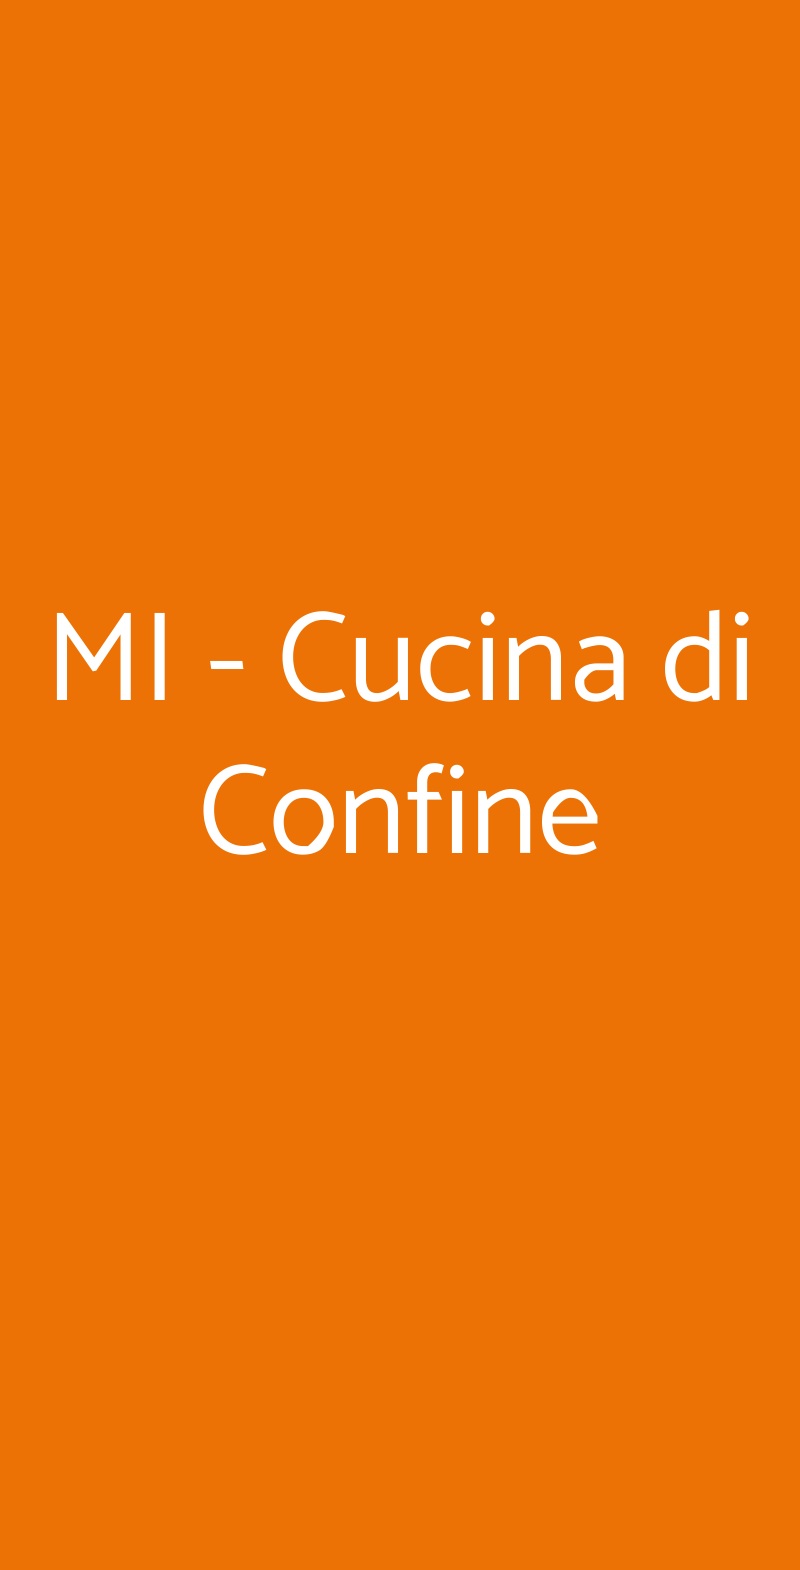 MI - Cucina di Confine Milano menù 1 pagina